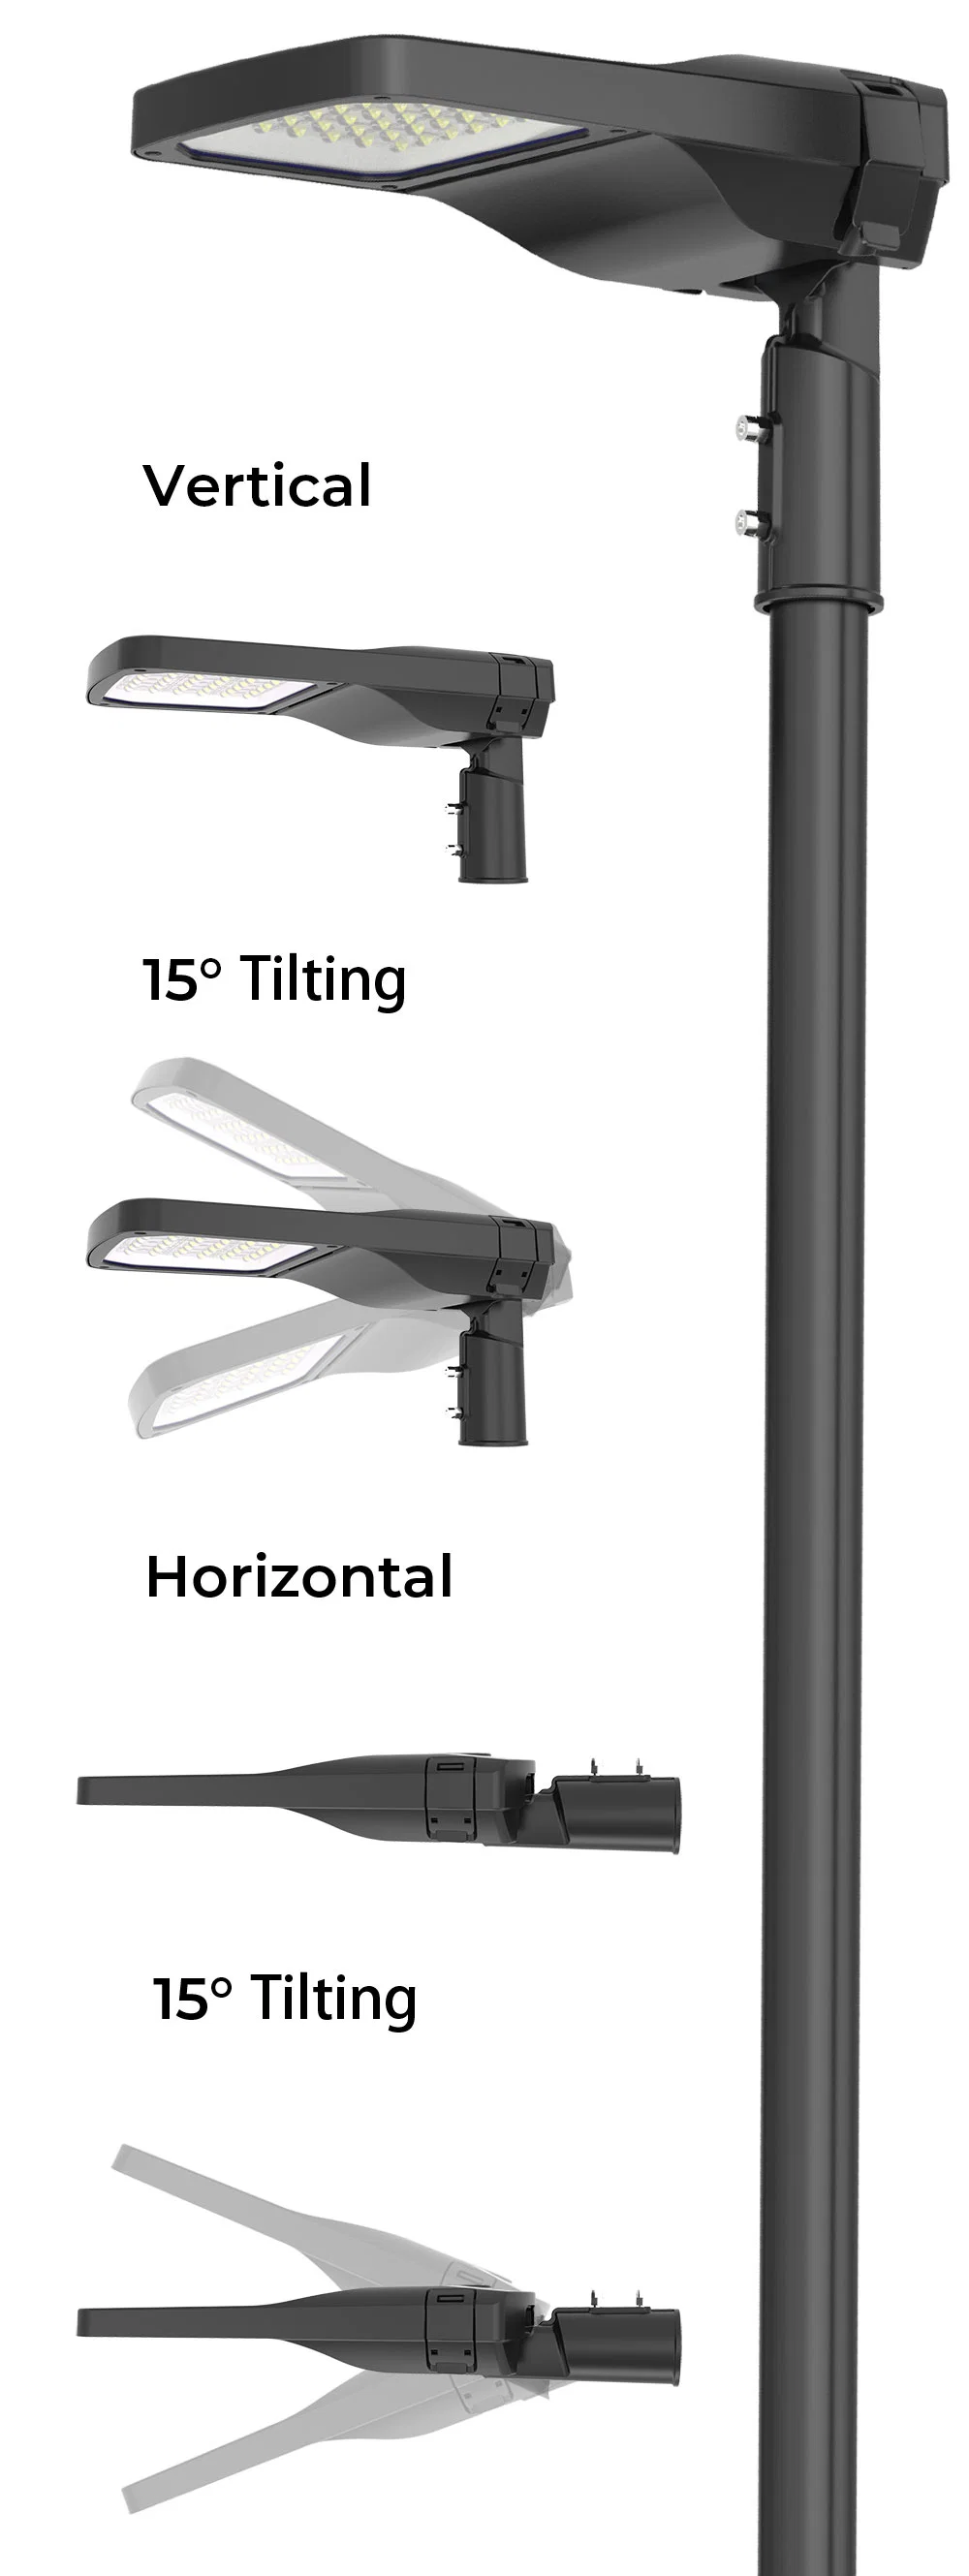 Automatic Street Light Control Smart Dali Dimming Ik08 Resistance IP66 Waterproof Outdoor Streetlamp Lighting Fixtures